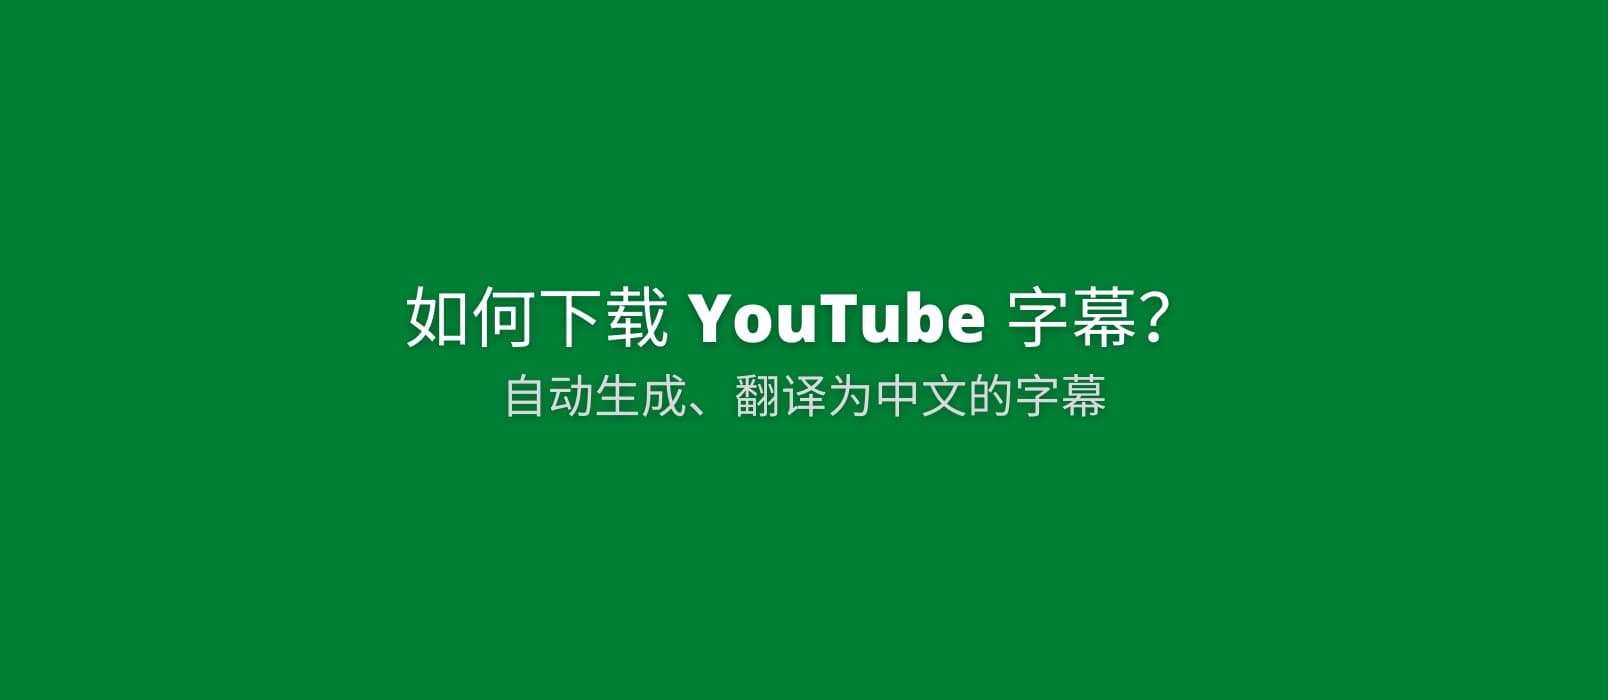 如何下载 YouTube 为视频自动生成并翻译为中文的字幕文件[Chrome] 1